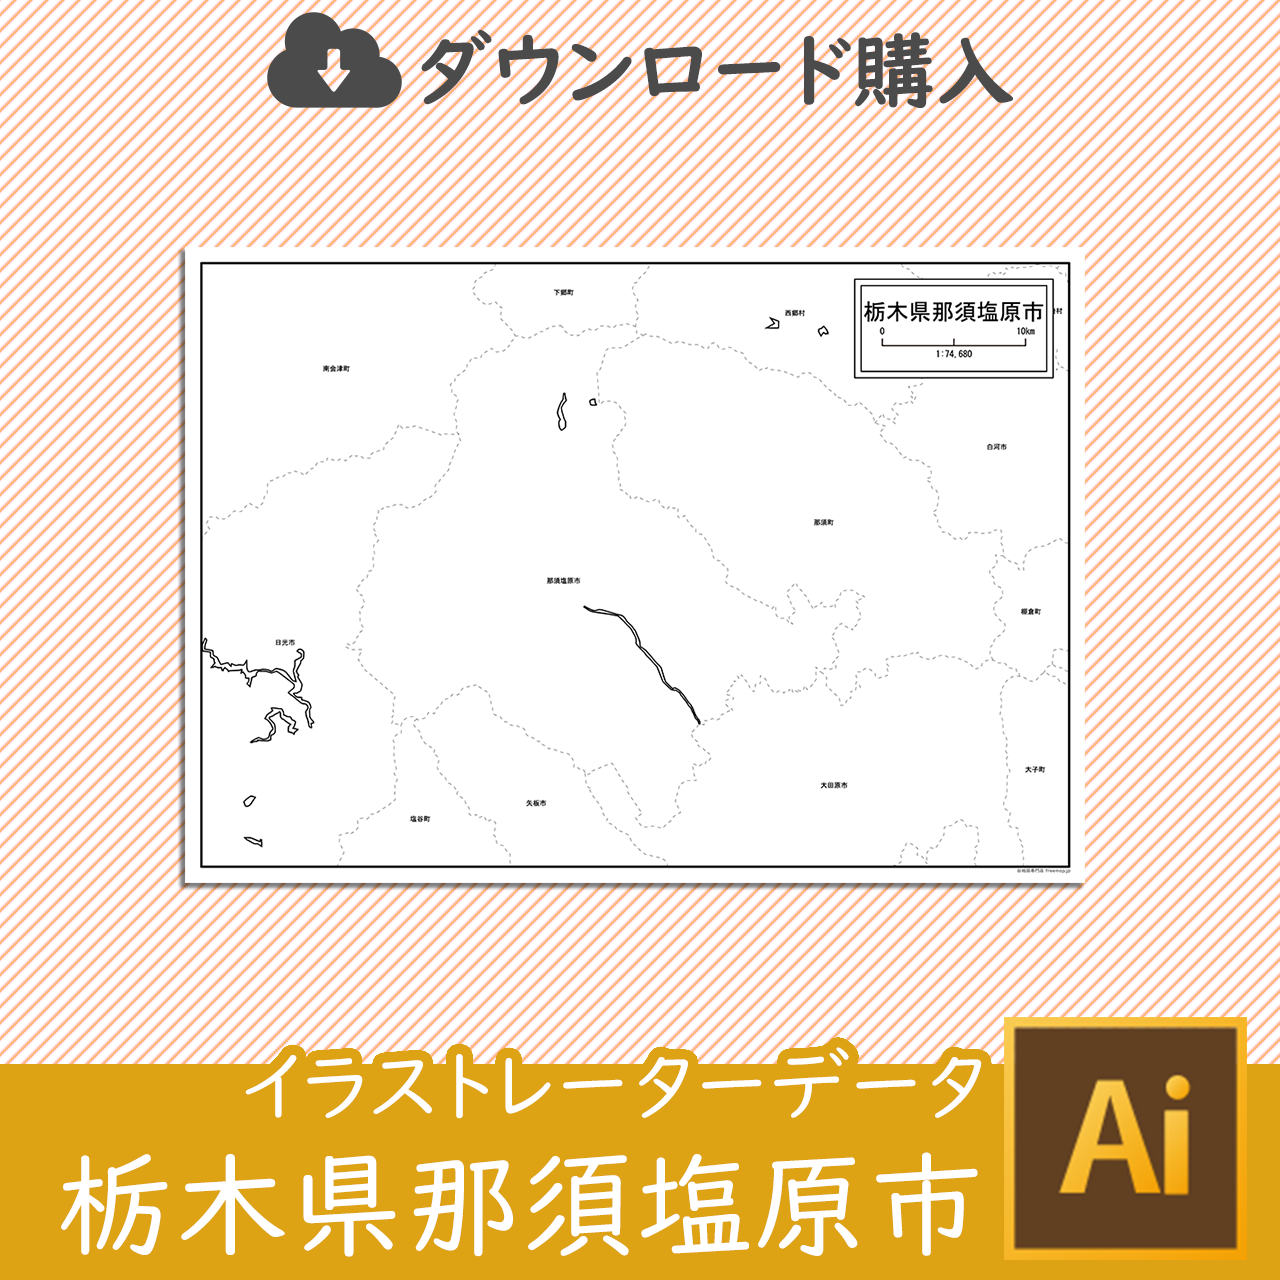 那須塩原市のaiデータのサムネイル画像